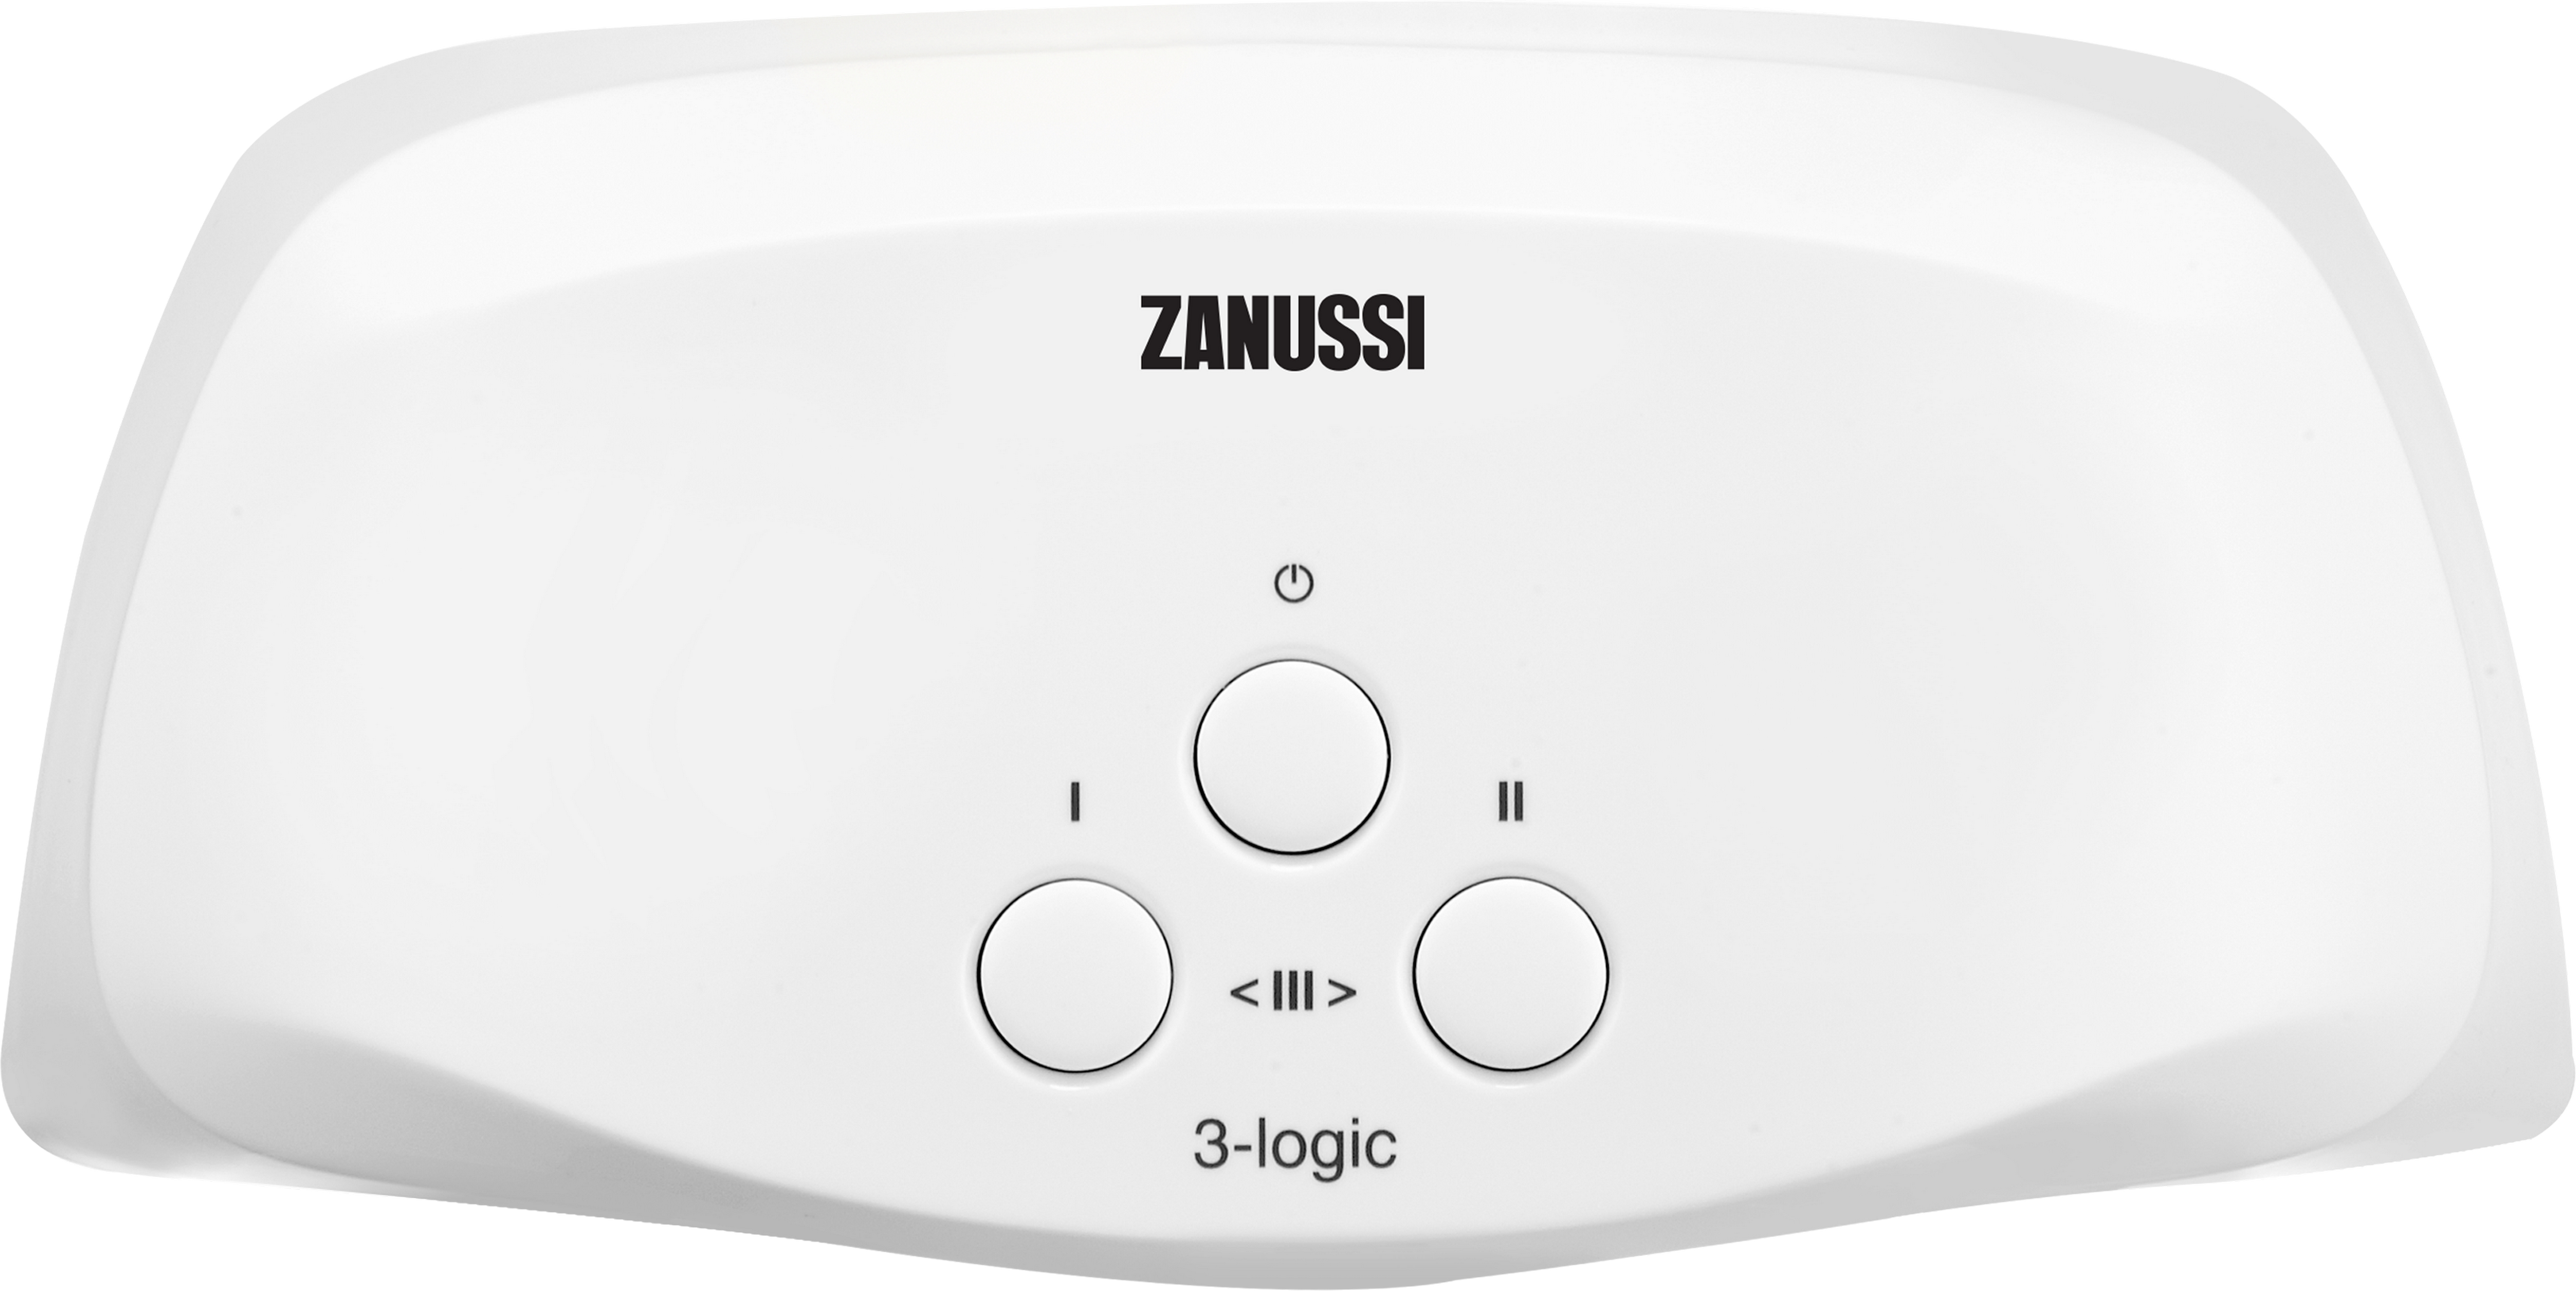 Проточный водонагреватель Zanussi 3-logic TS (5,5 кВт) в интернет-магазине, главное фото